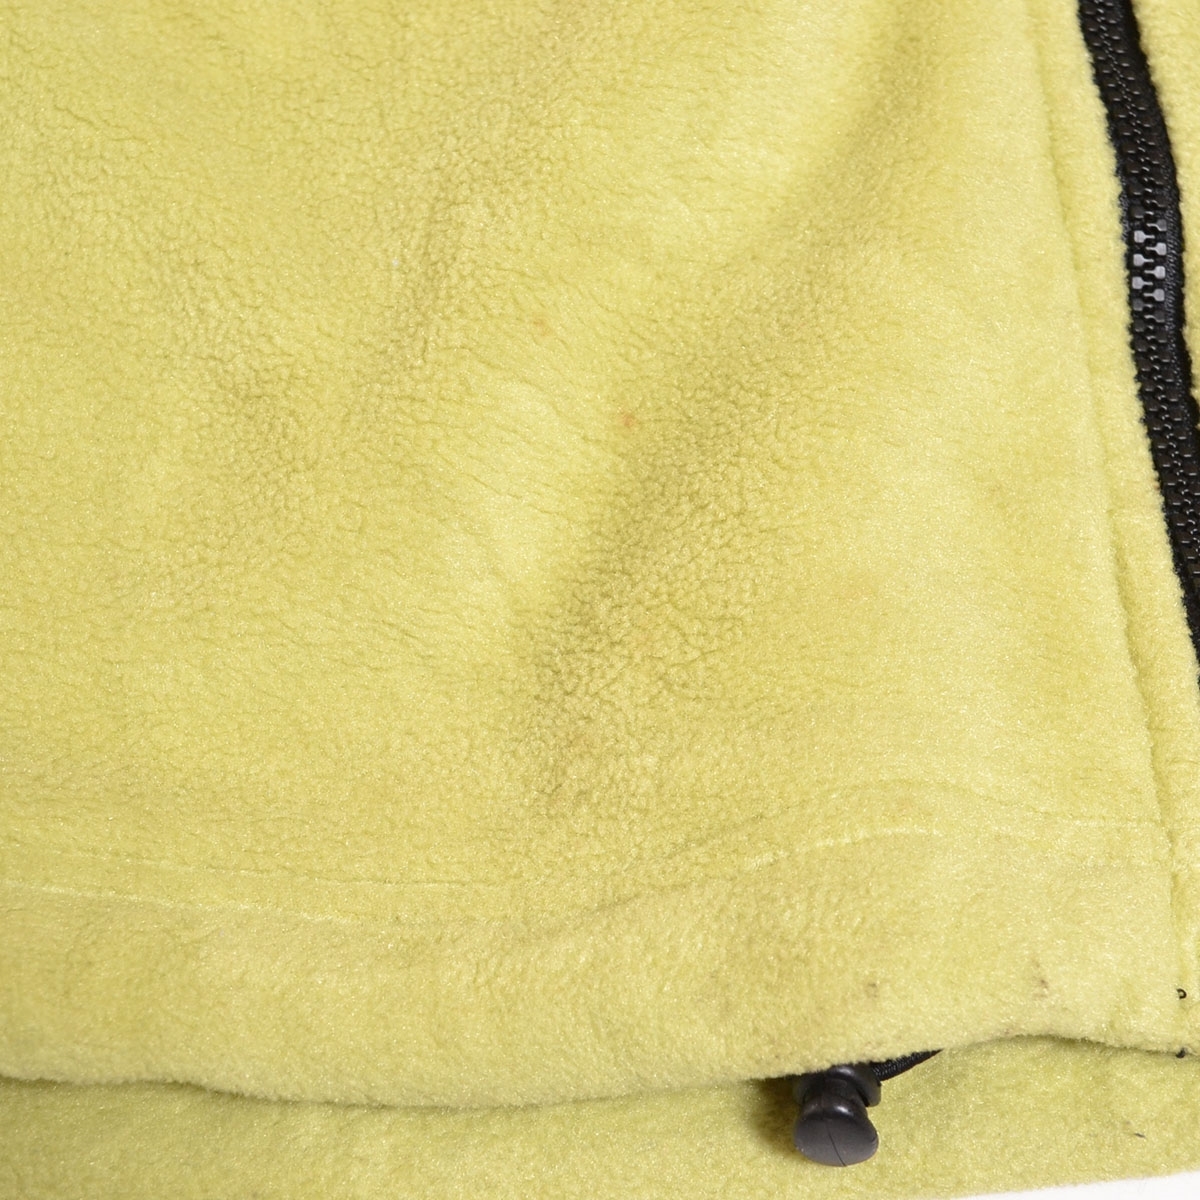 *487085 Jack Wolfskin Jack Wolfskin fleece jacket size L men's yellow 